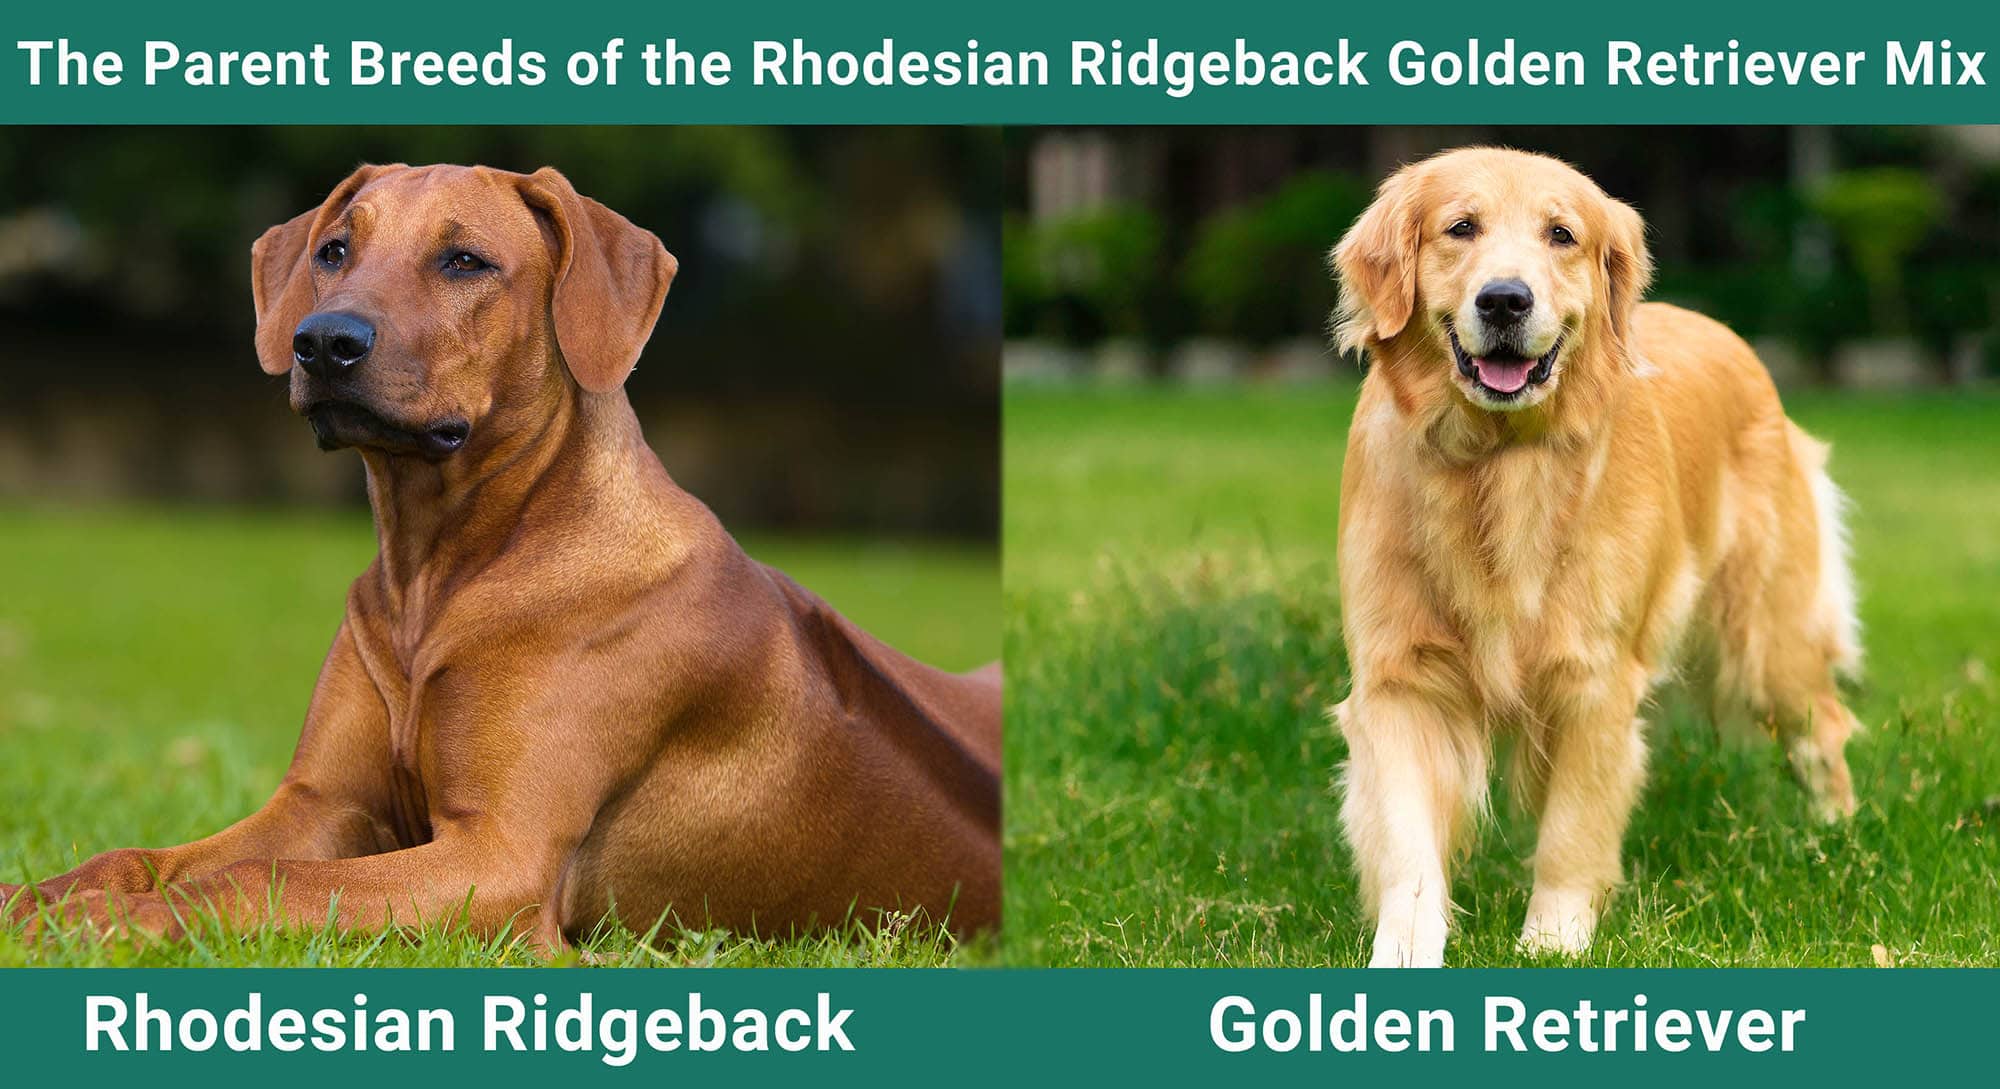 The Parent Breeds of the Rhodesian Ridgeback Golden Retriever Mix